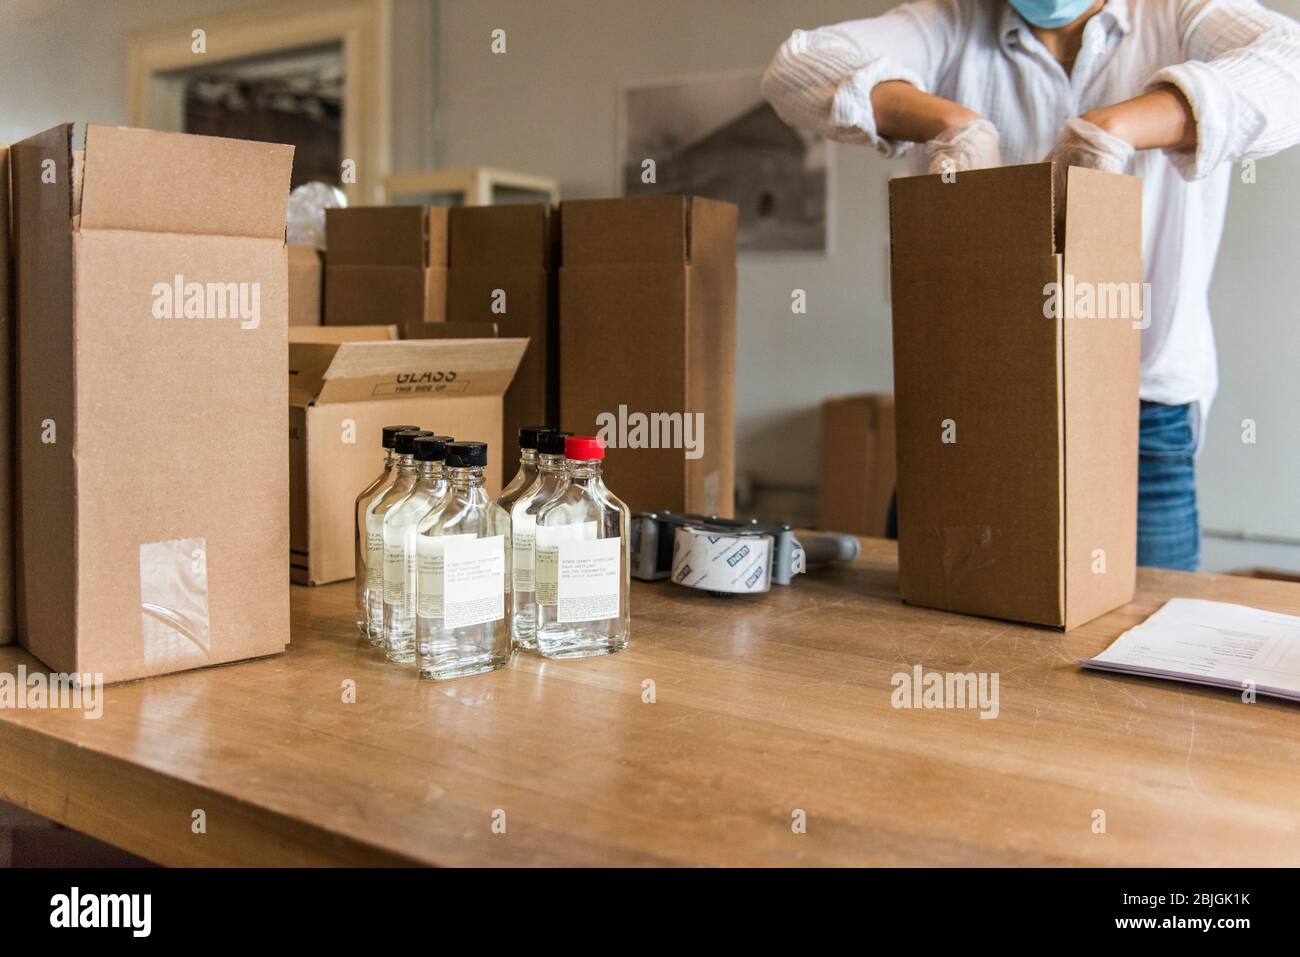 Brooklyn, New York, États-Unis - 24 avril 2020 : bouteilles de désinfectant pour les mains expédiées par la distillerie Kings County Distillery. La distillerie qui produit habituellement des whi Banque D'Images